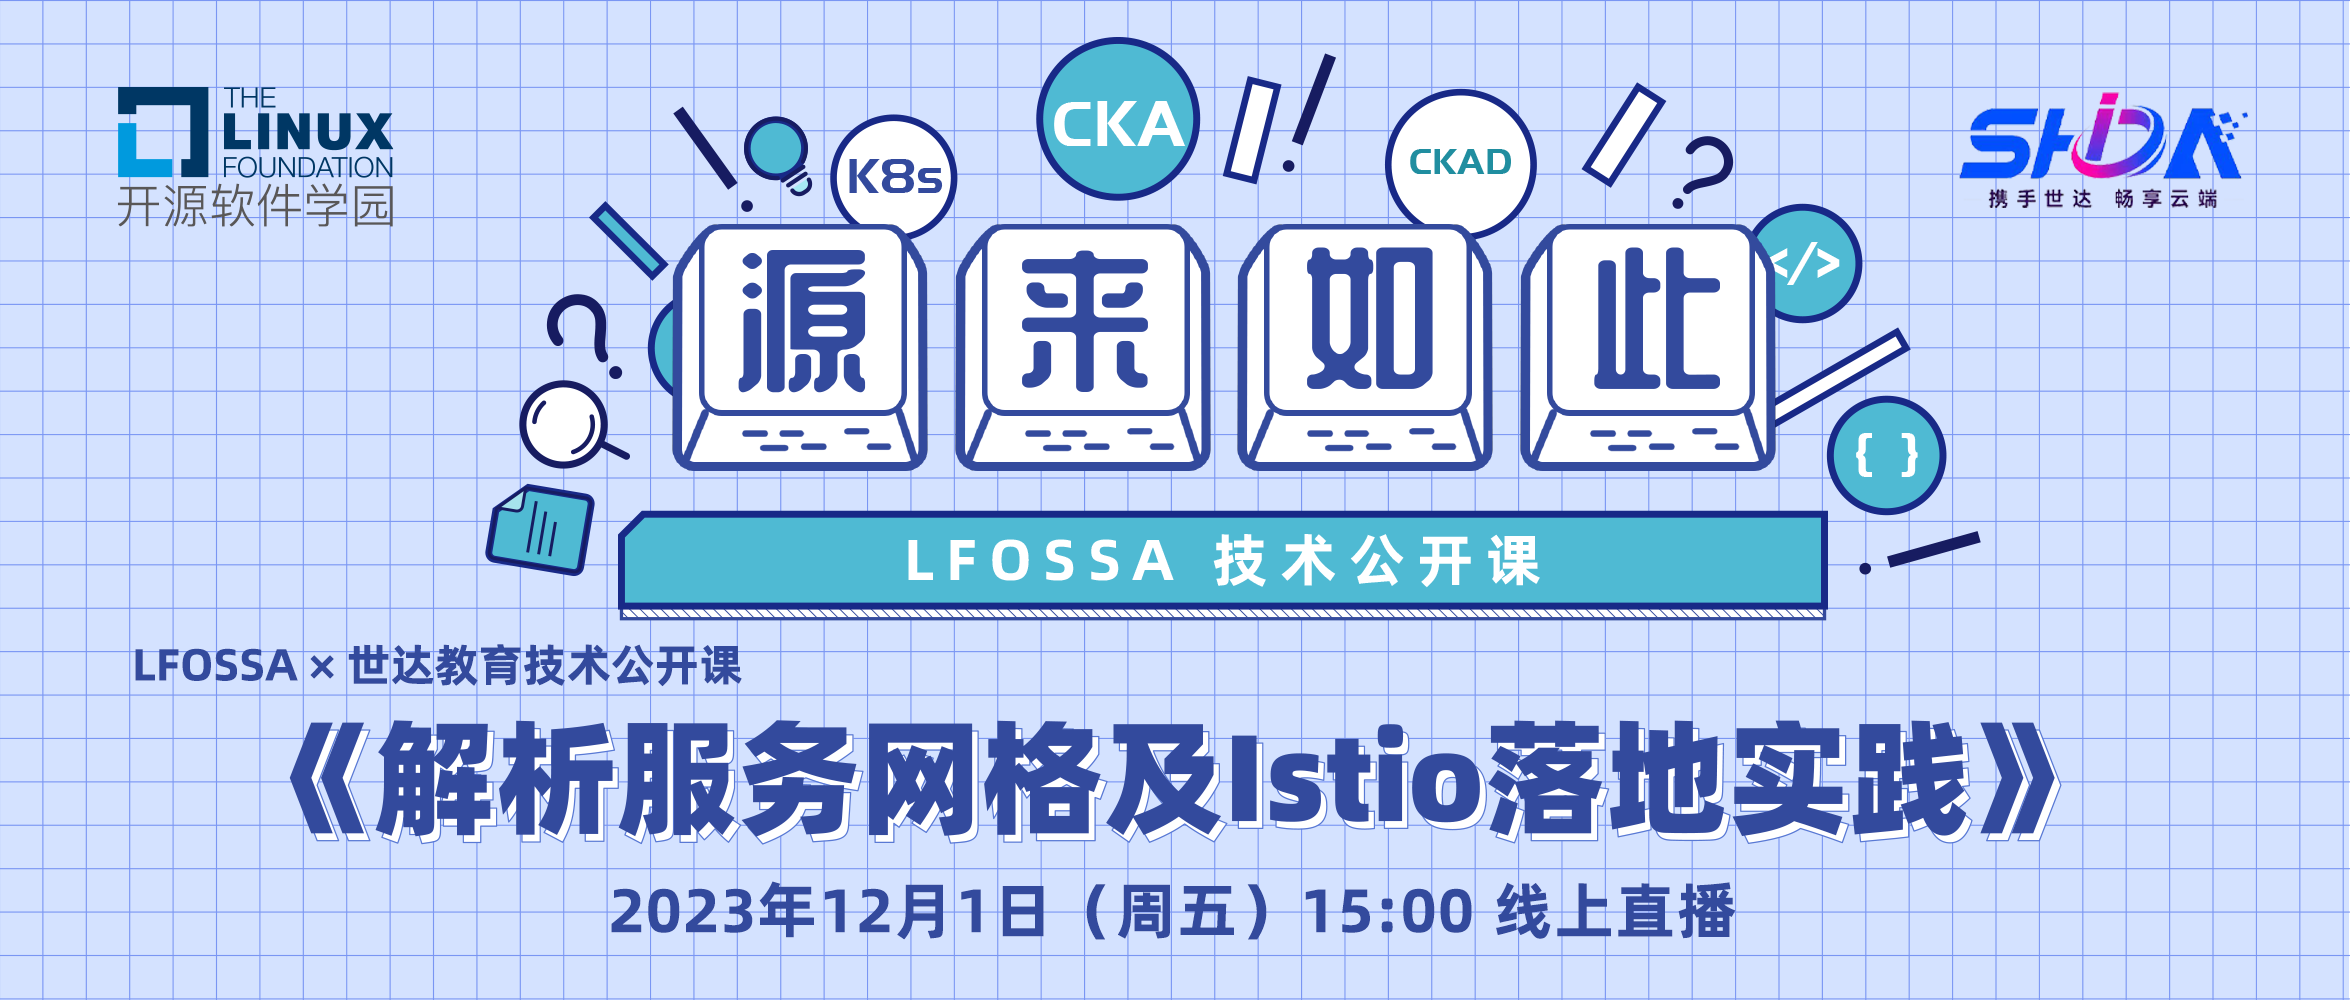 LFOSSA源来如此公开课 | 解析服务网格及Istio落地实践